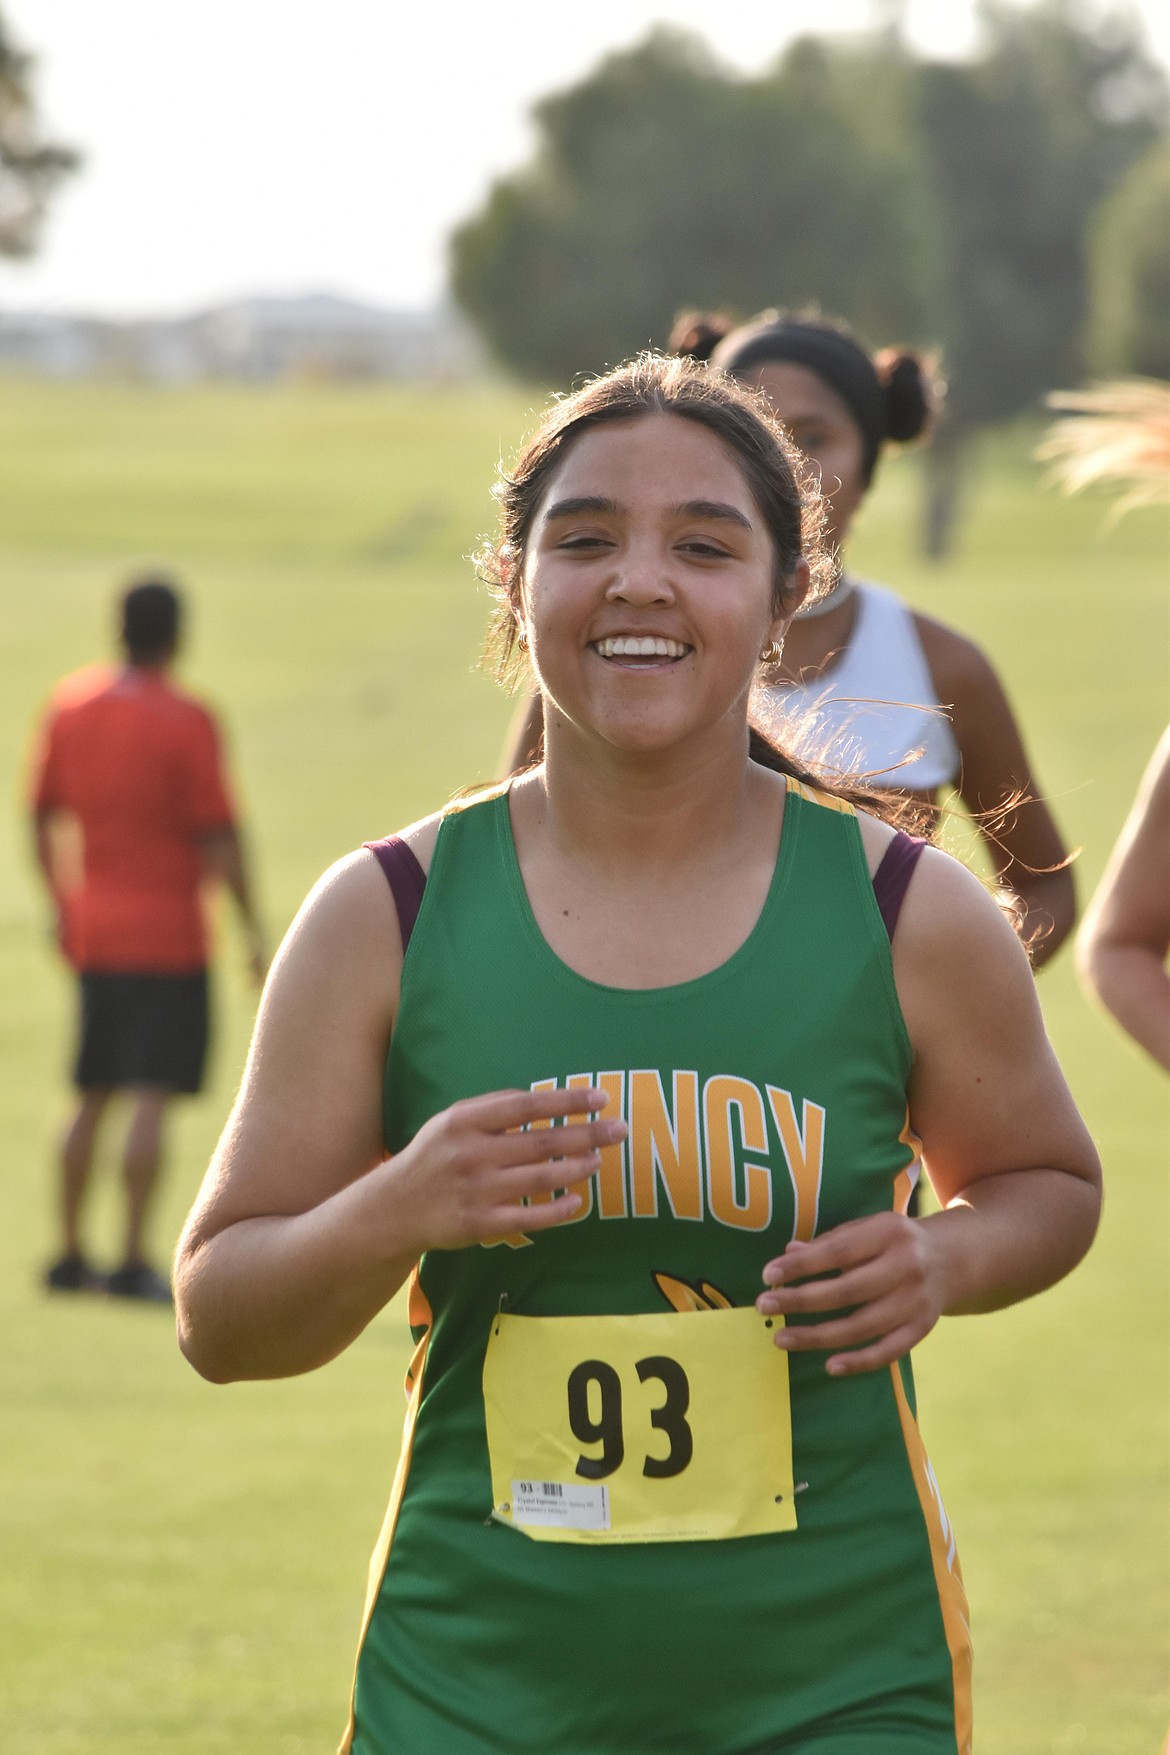 Quincy junior Crystal Espinoza smiles as she runs the race.